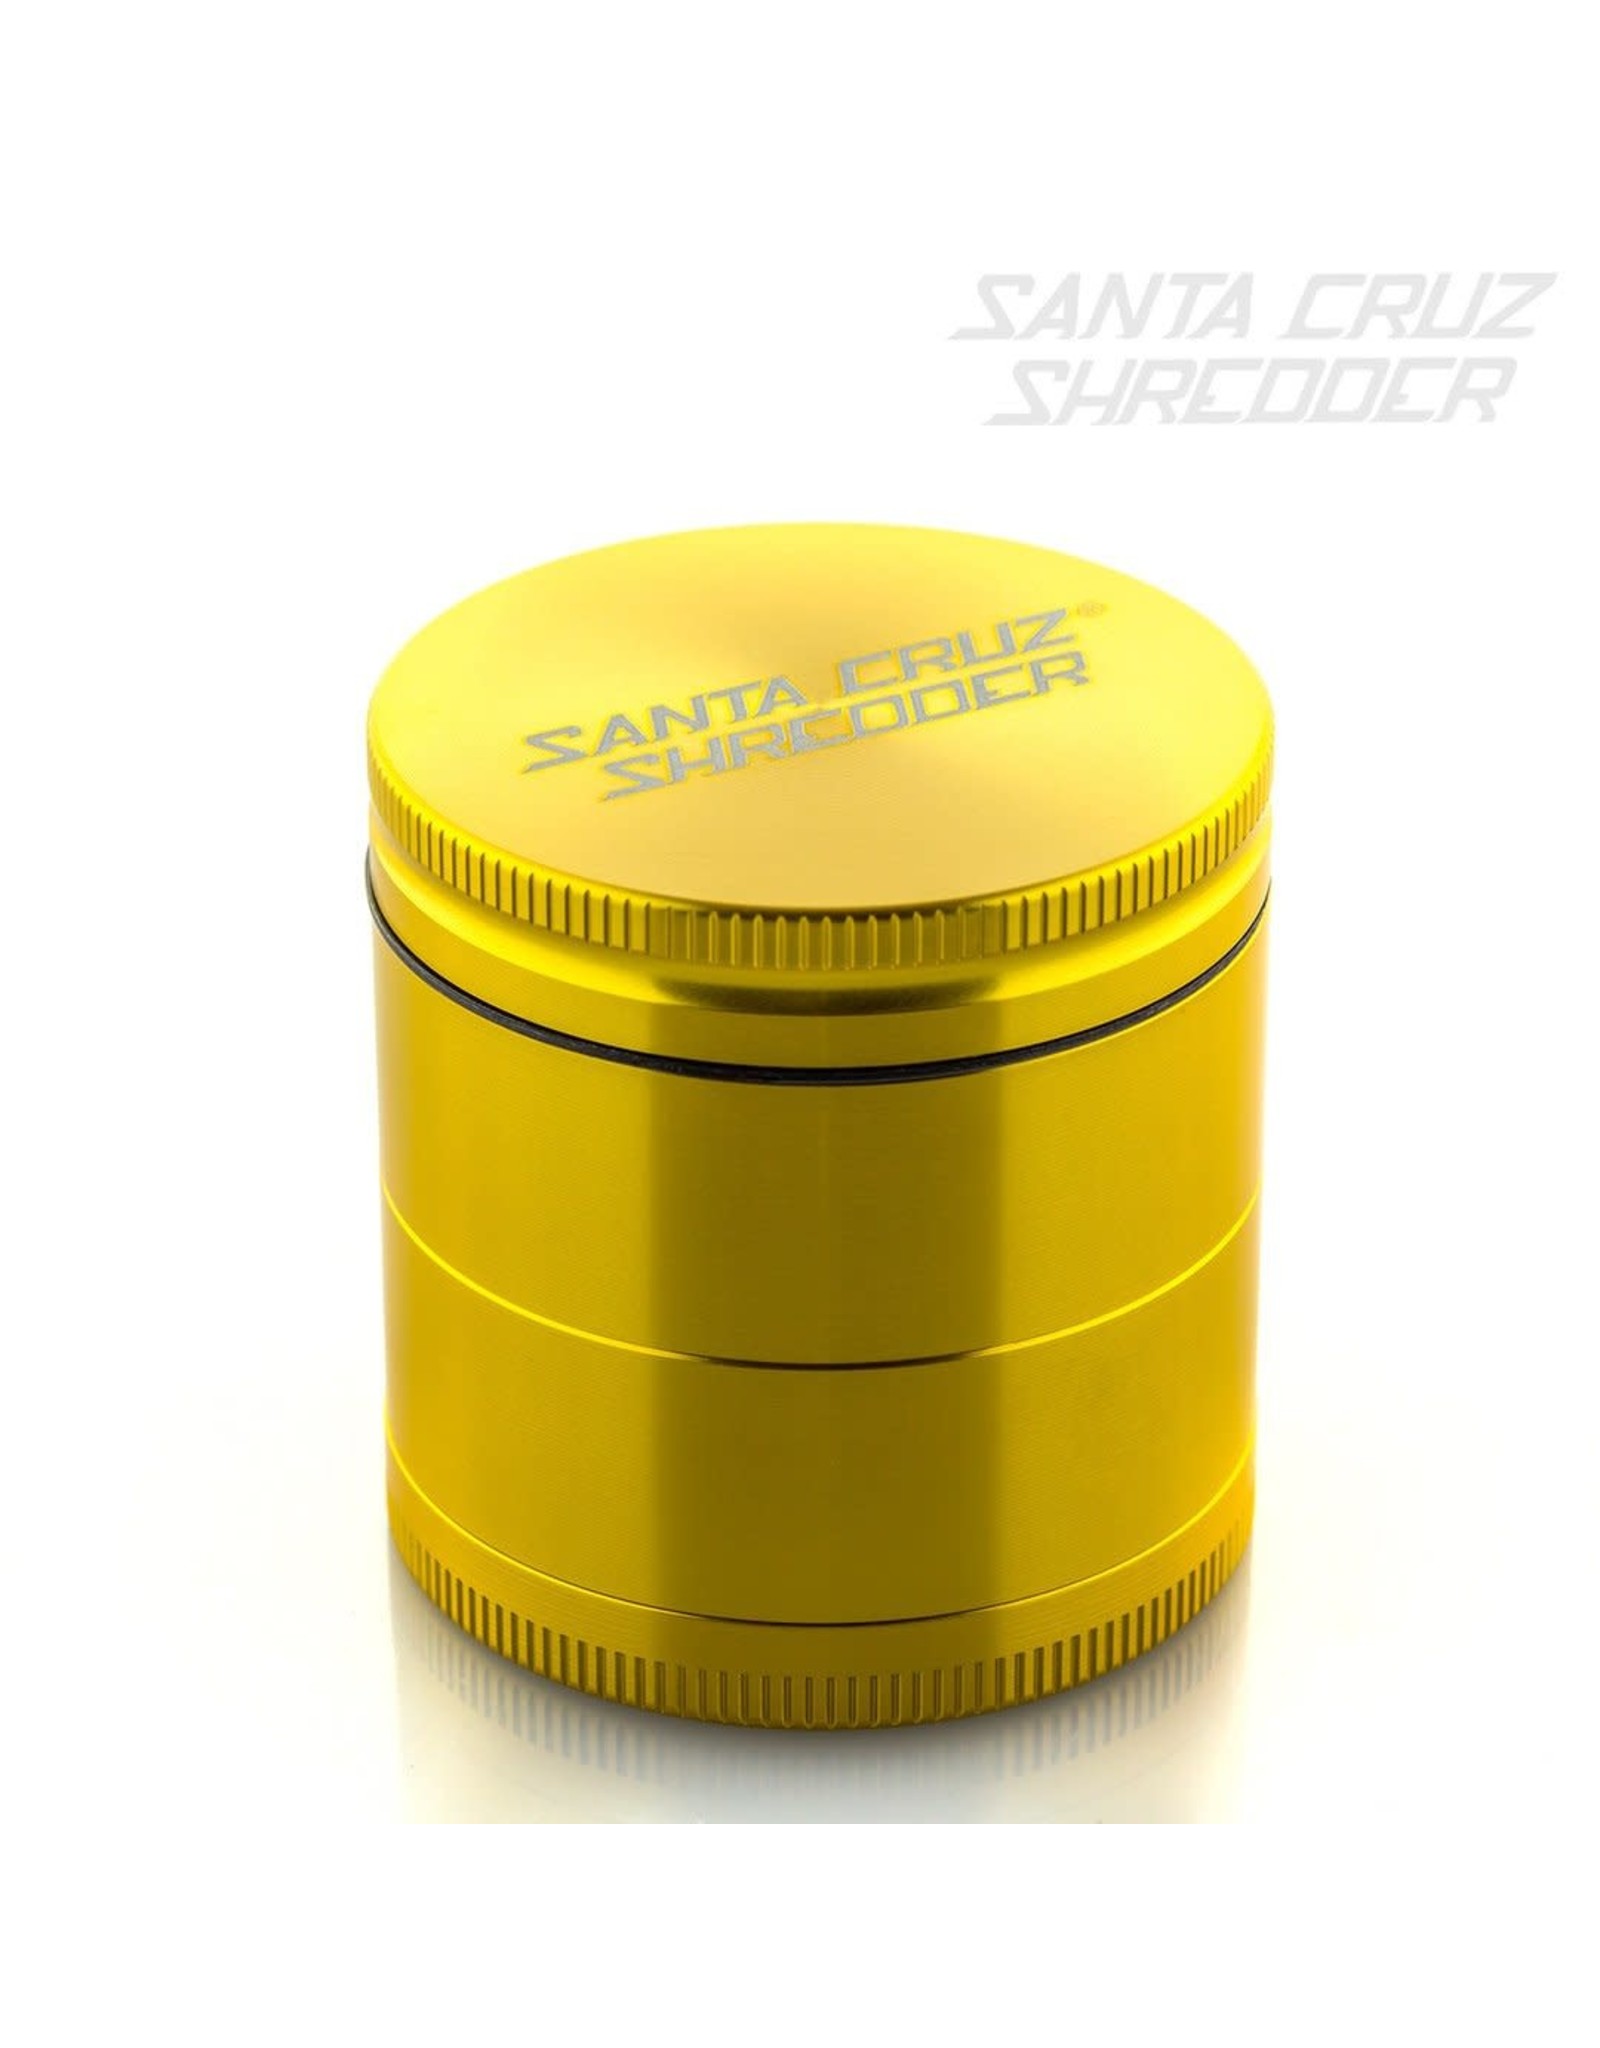 Santa Cruz Shredder Santa Cruz Shredder Medium 4Pc Gold